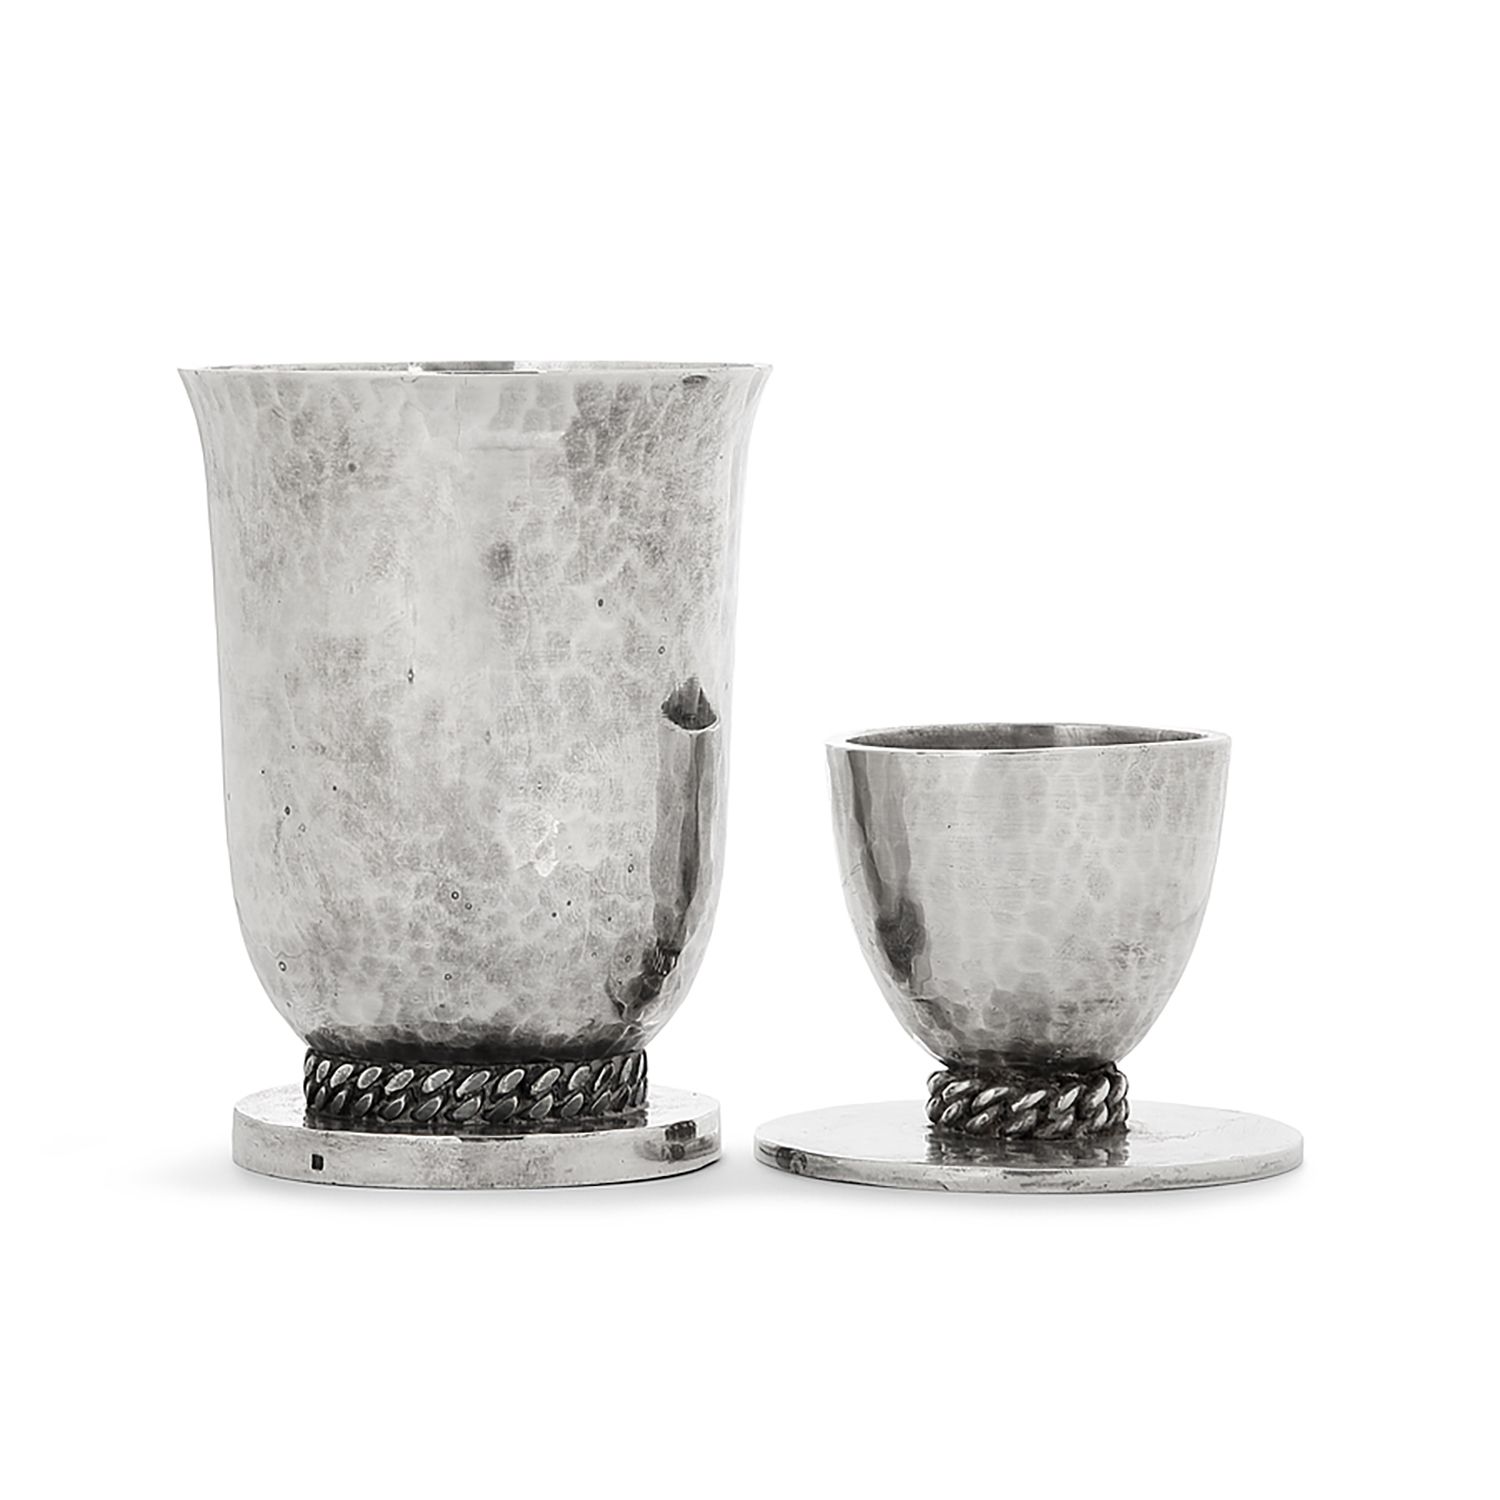 Null 让-德斯普雷斯 (1889 -1980)

一套镀银的蛋杯和计时器，表面经过锤击，装饰有灵活的链子。签名为 "J.Desprès"，定音鼓上有标题印章&hellip;